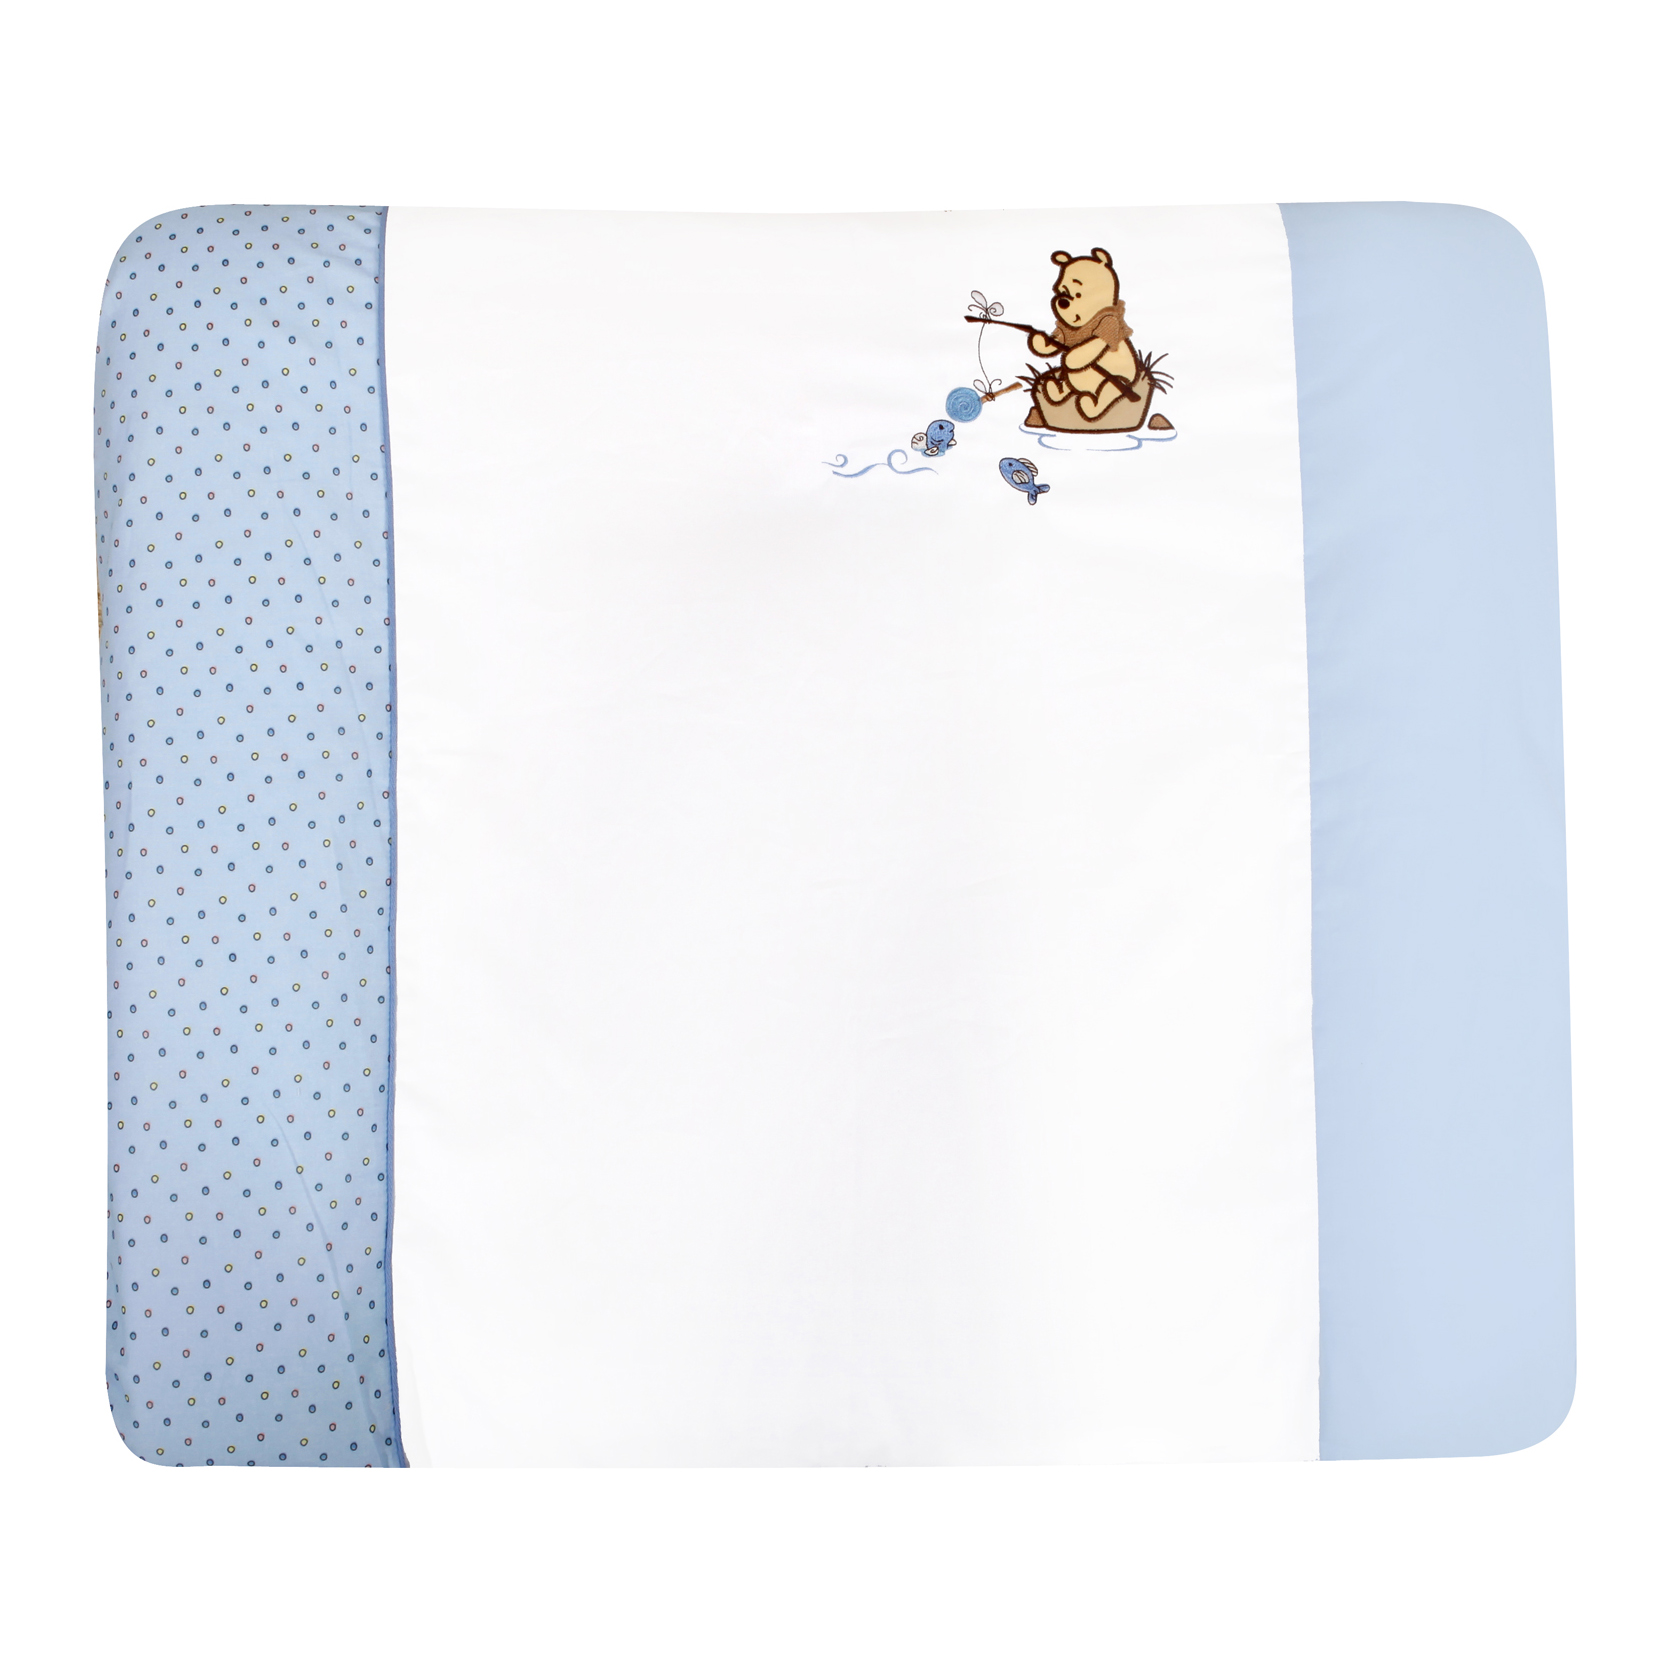 Wickelauflage Adorable Pooh Boy - 100% Baumwolle - Weiß/Blau mit Winnie Pooh Applikation